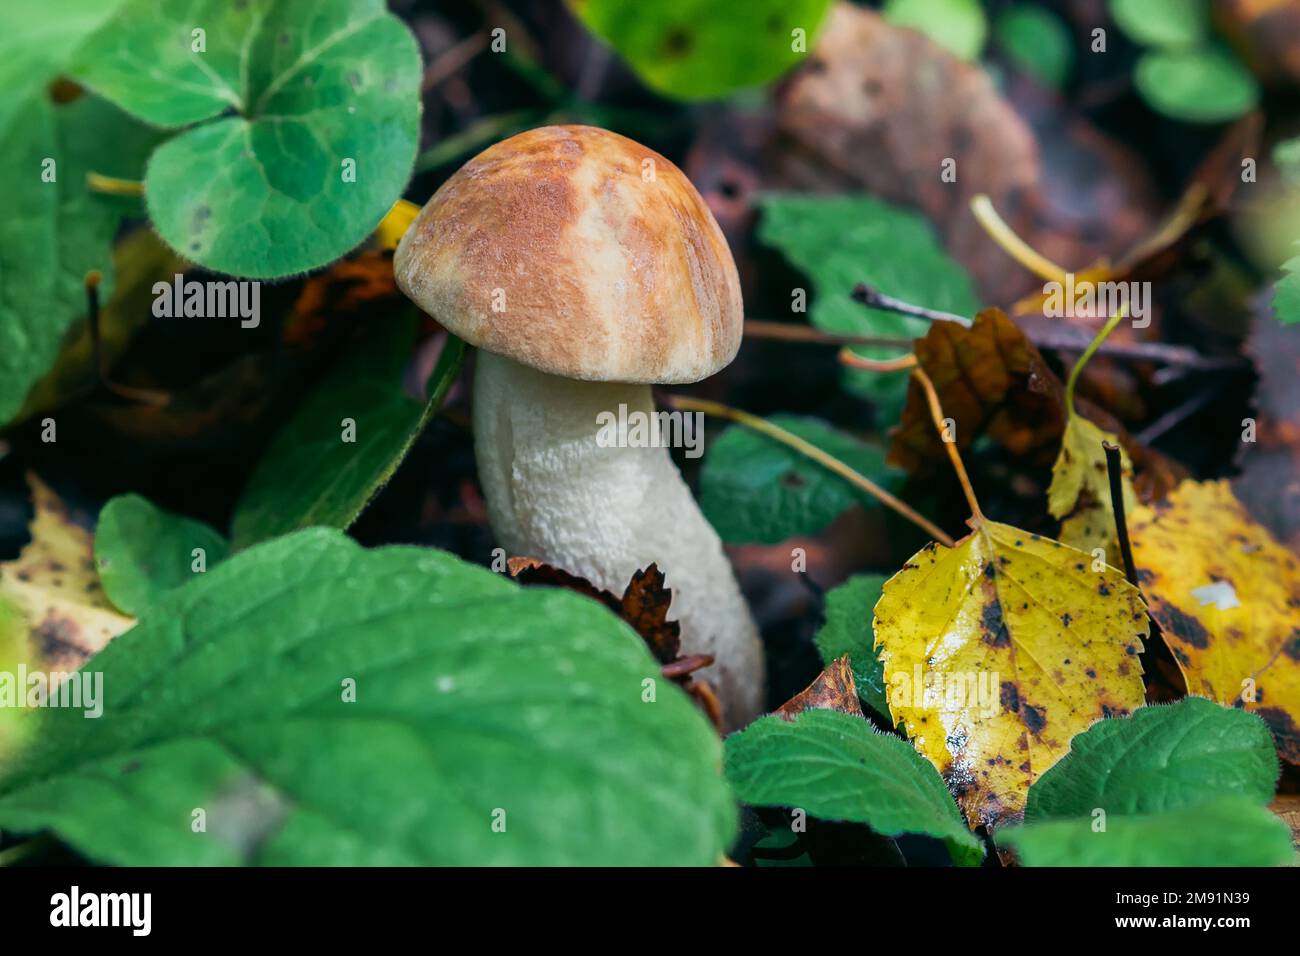 champignons de bouleau dans la forêt dans l'herbe et les feuilles. Champignons comestibles avec chapeau brun régime savoureux en gros plan Banque D'Images